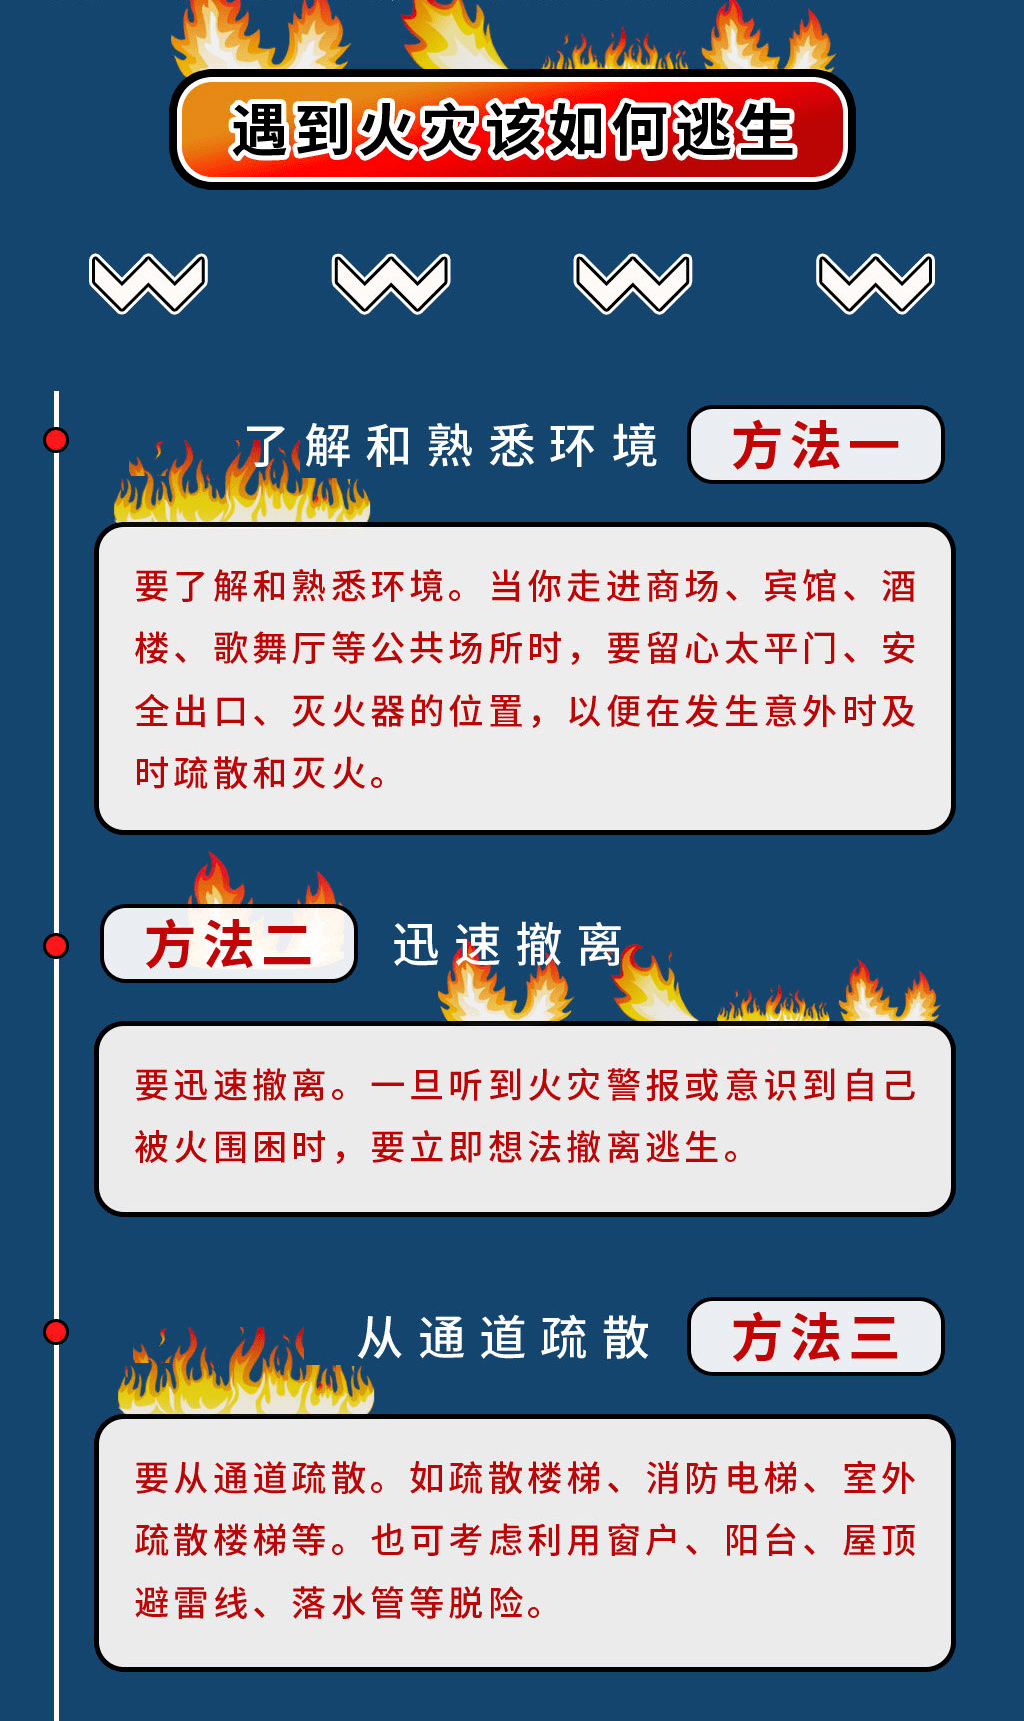 2017 厦门火灾